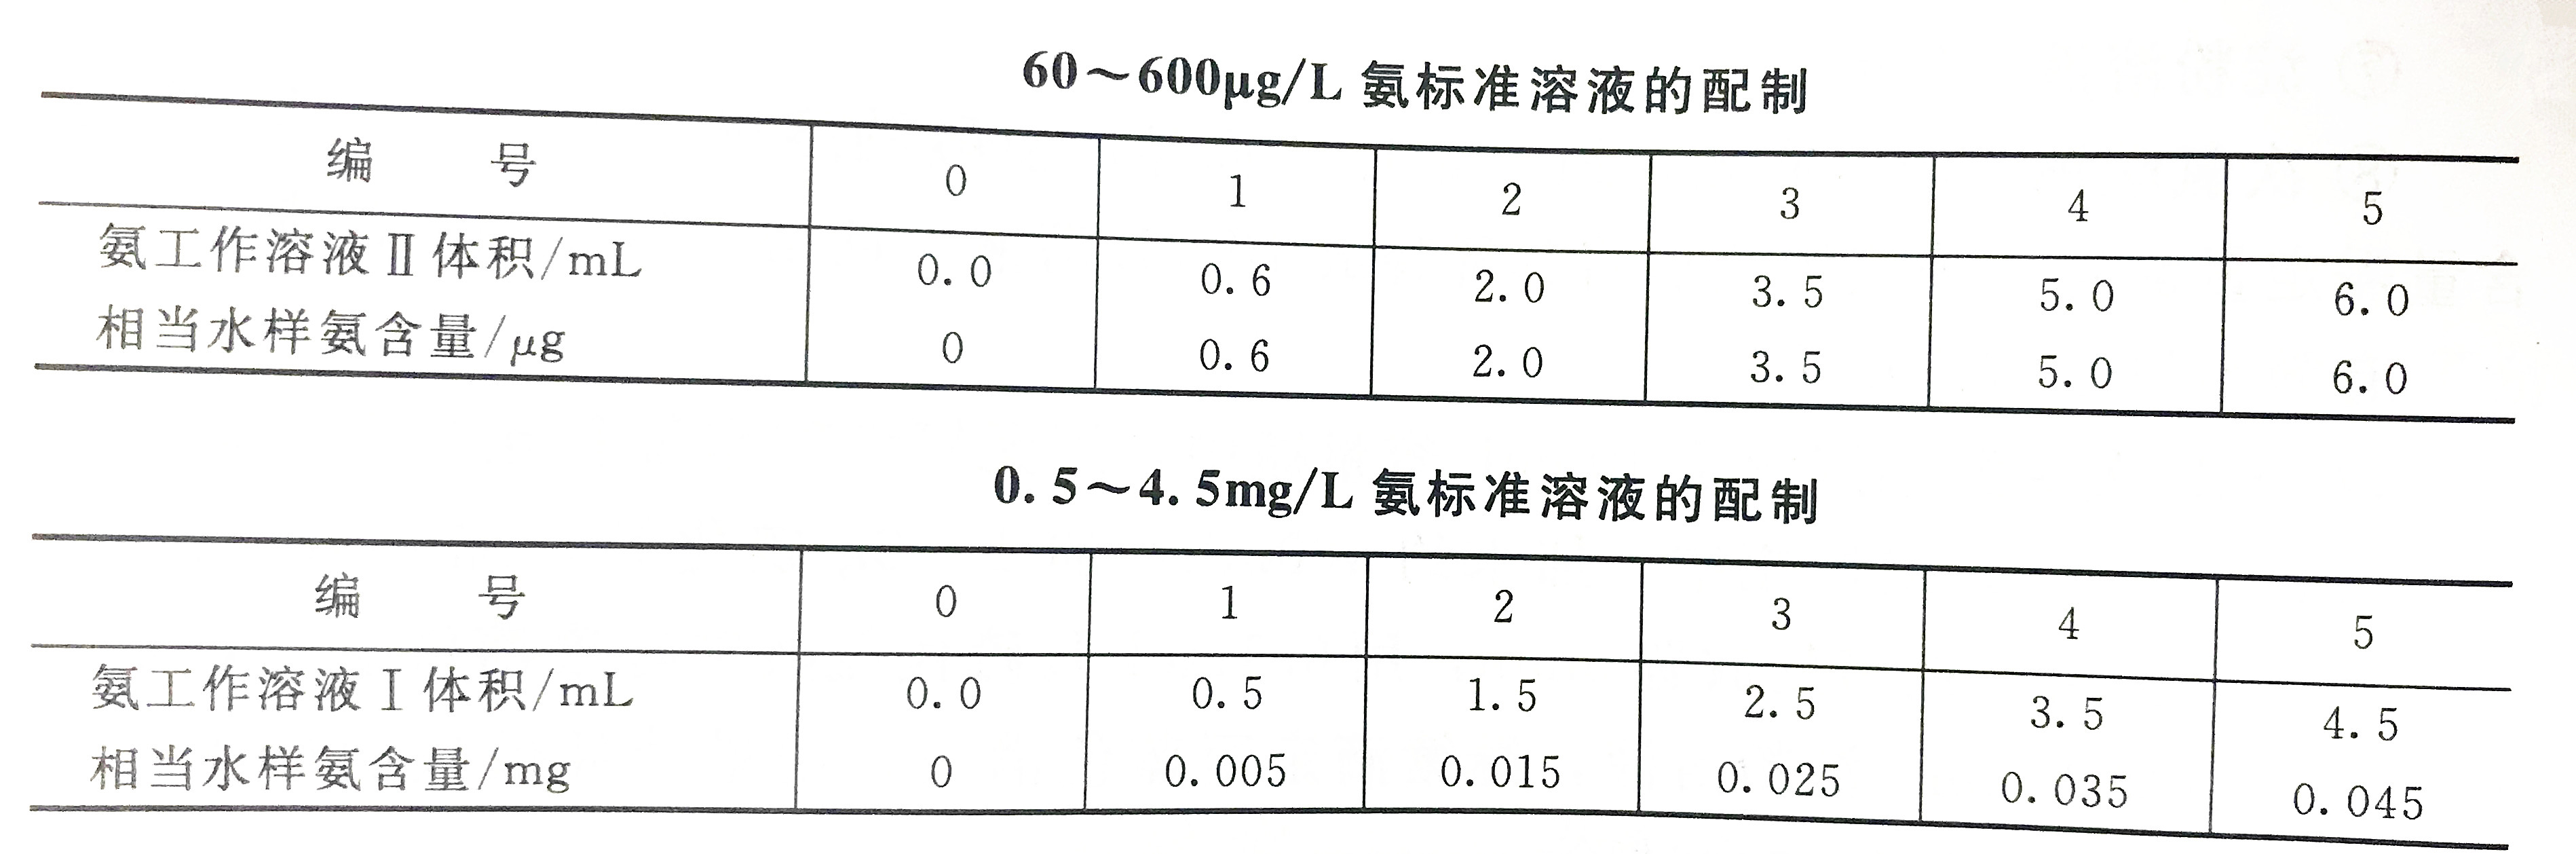 氨标准溶液配置表